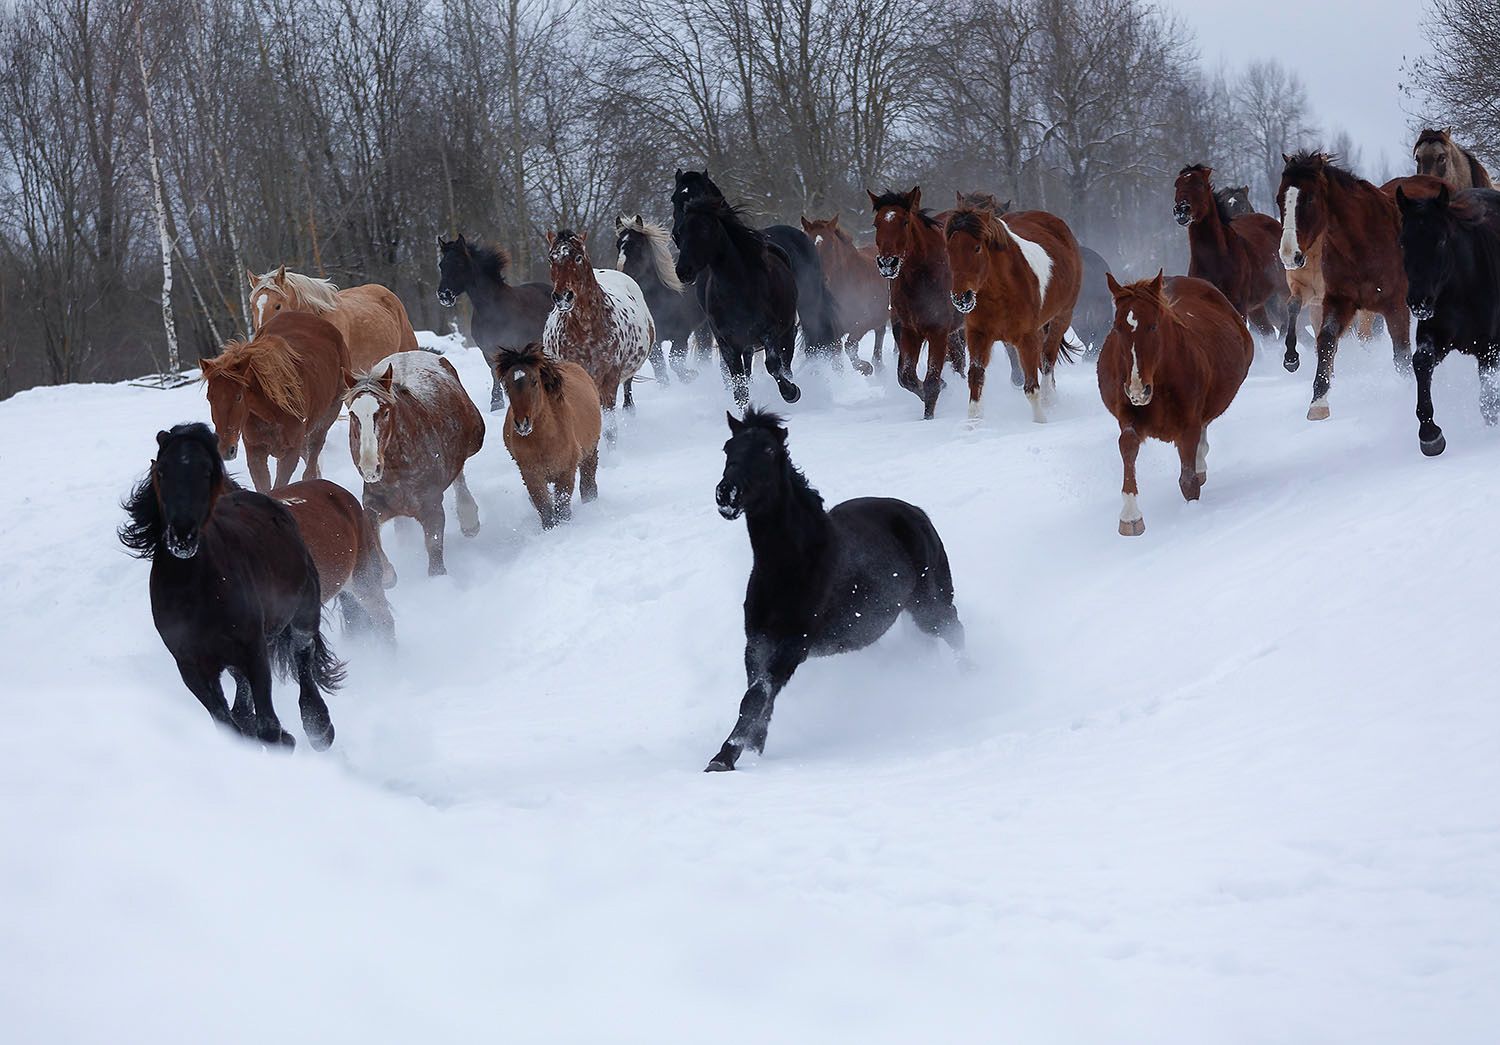 лошади,табун,галоп, движение,зима, horses,herd,gallop, winter, nature, Юлия Стукалова